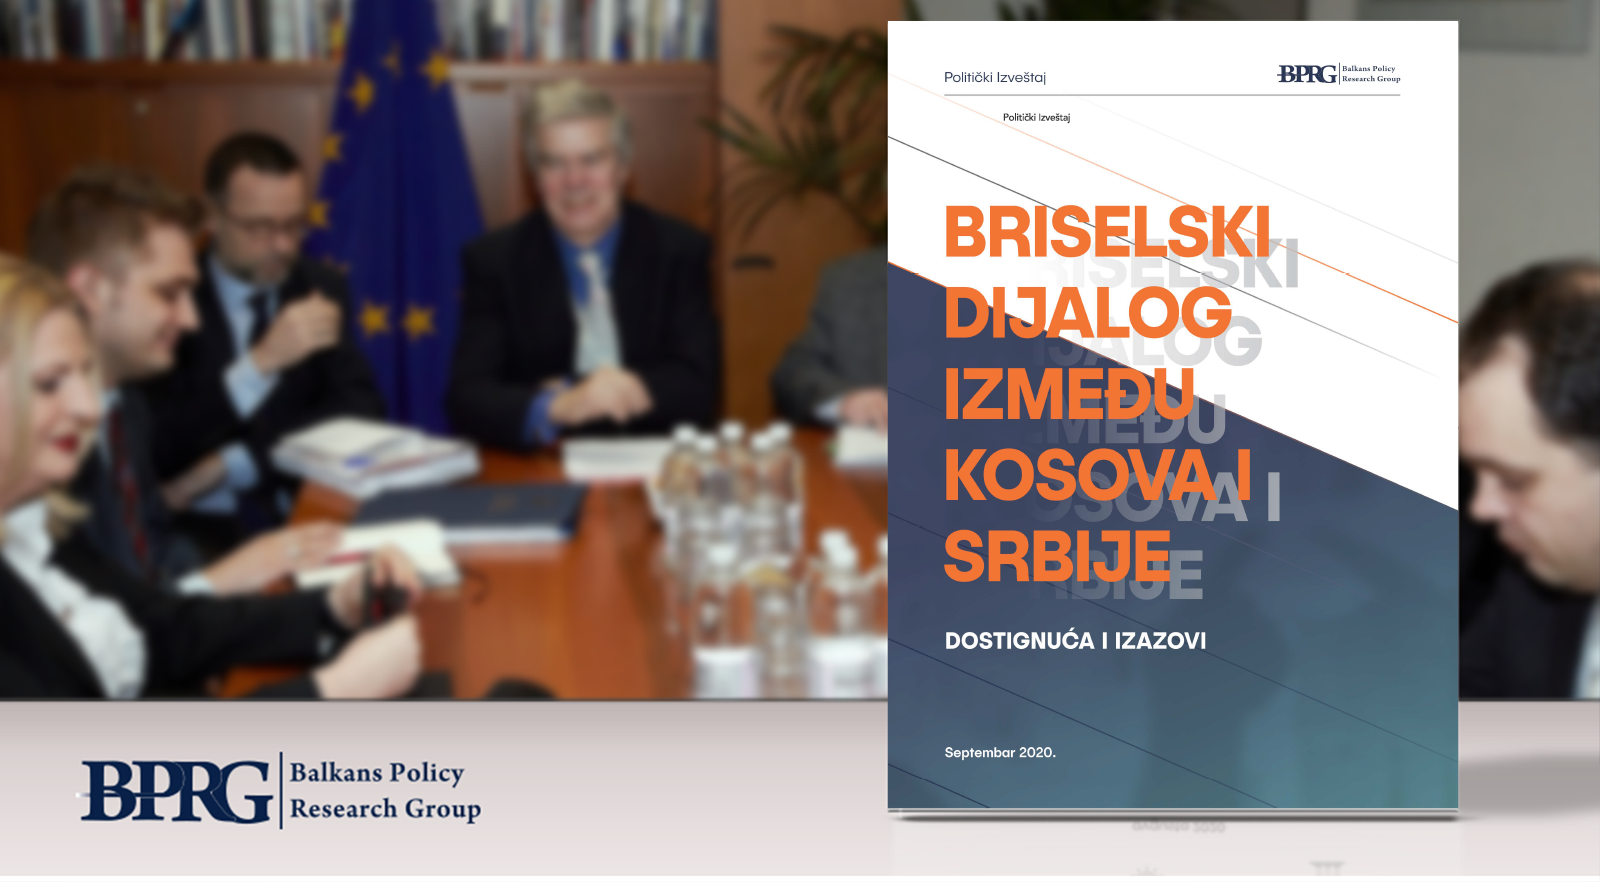 Briselski Dijalog Između Kosova i Srbije: Dostignuća i Izazovi